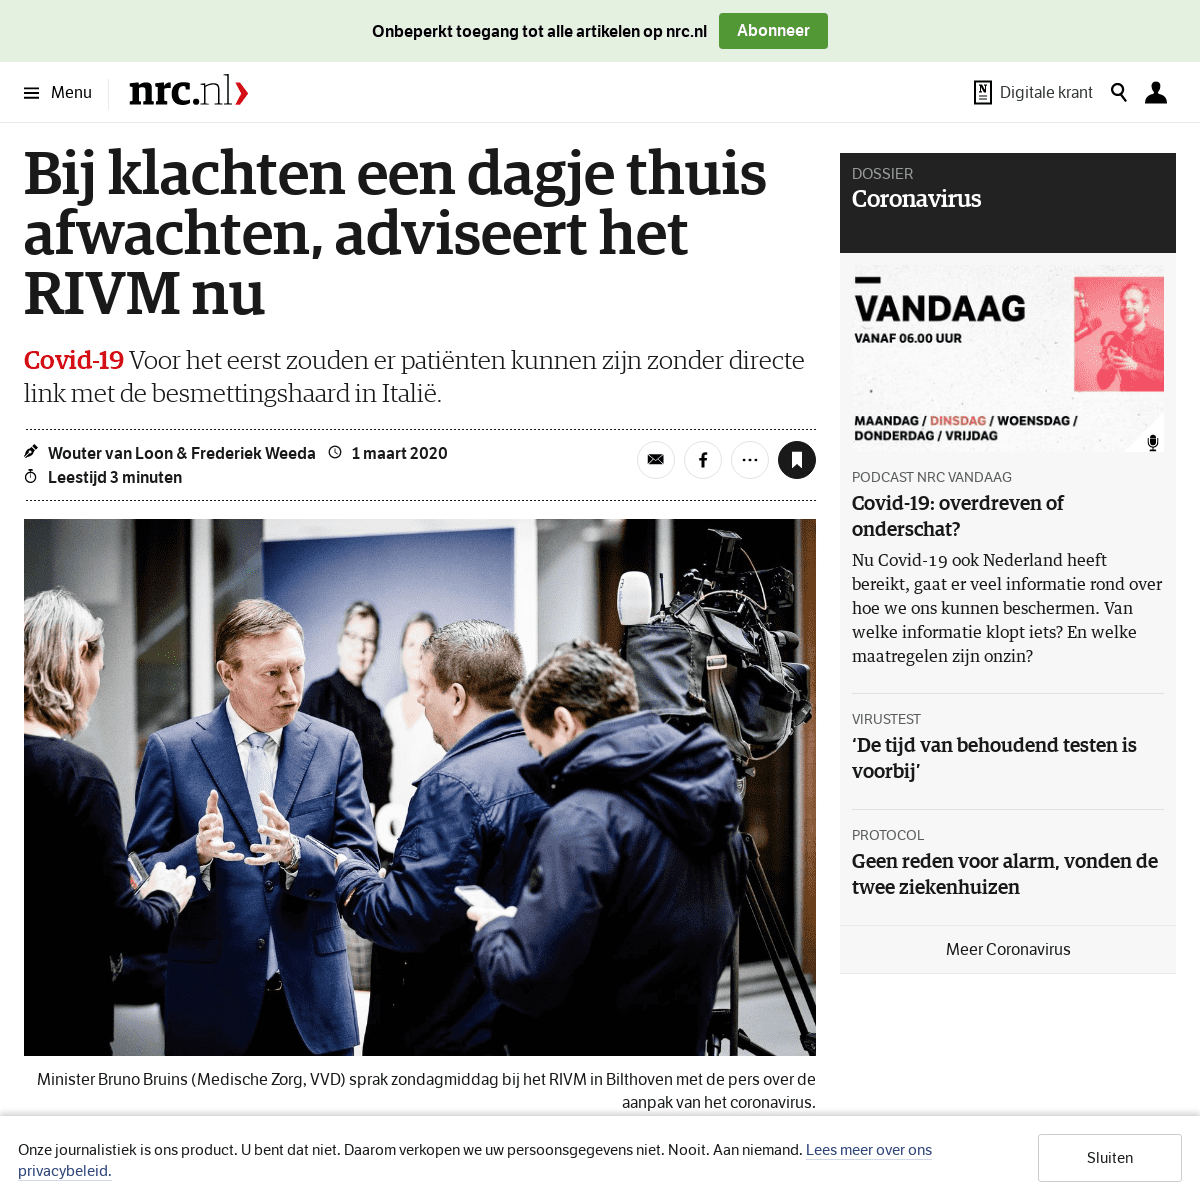 A complete backup of www.nrc.nl/nieuws/2020/03/01/bij-klachten-een-dagje-thuis-afwachten-adviseert-het-rivm-nu-a3992276